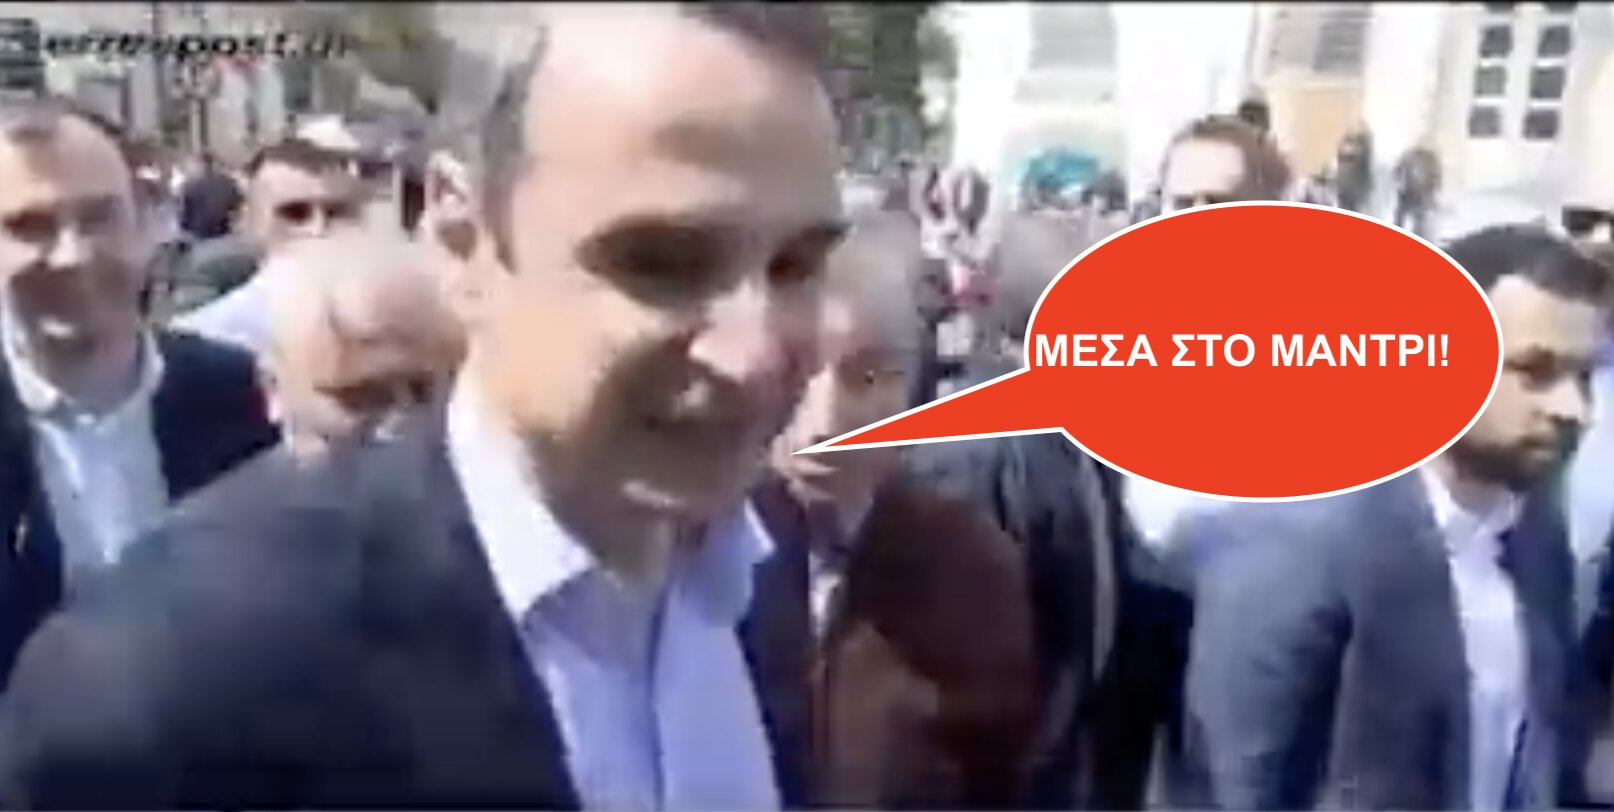 Κούλης σε ψηφοφόρο και στους Έλληνες γενικά: Μείνετε στο…ΜΑΝΤΡΙ!!! Μείνετε ΣΠΙΤΙ!!!